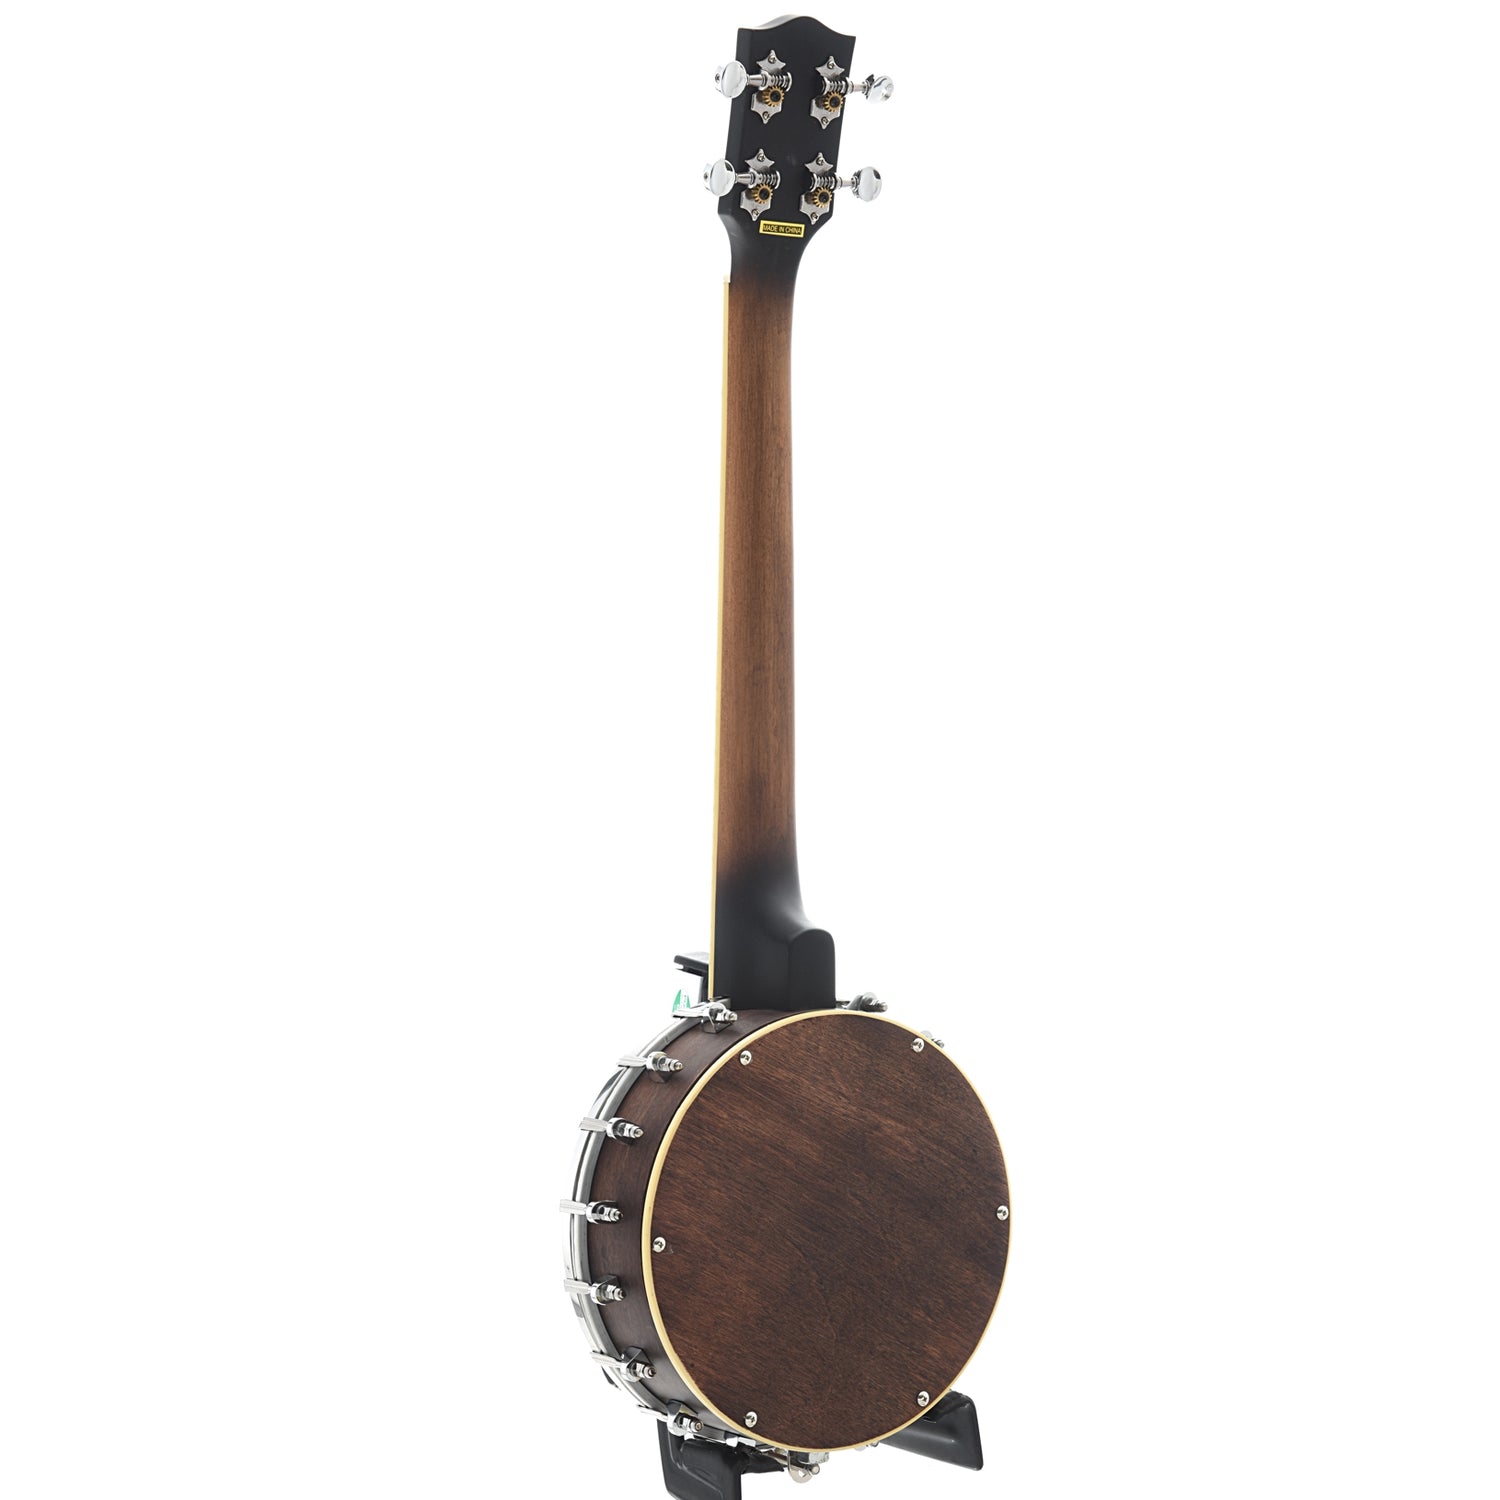 Image 10 of Gold Tone Baritone Banjo Ukulele & Case - SKU# GTBUB : Product Type Banjo Ukuleles : Elderly Instruments